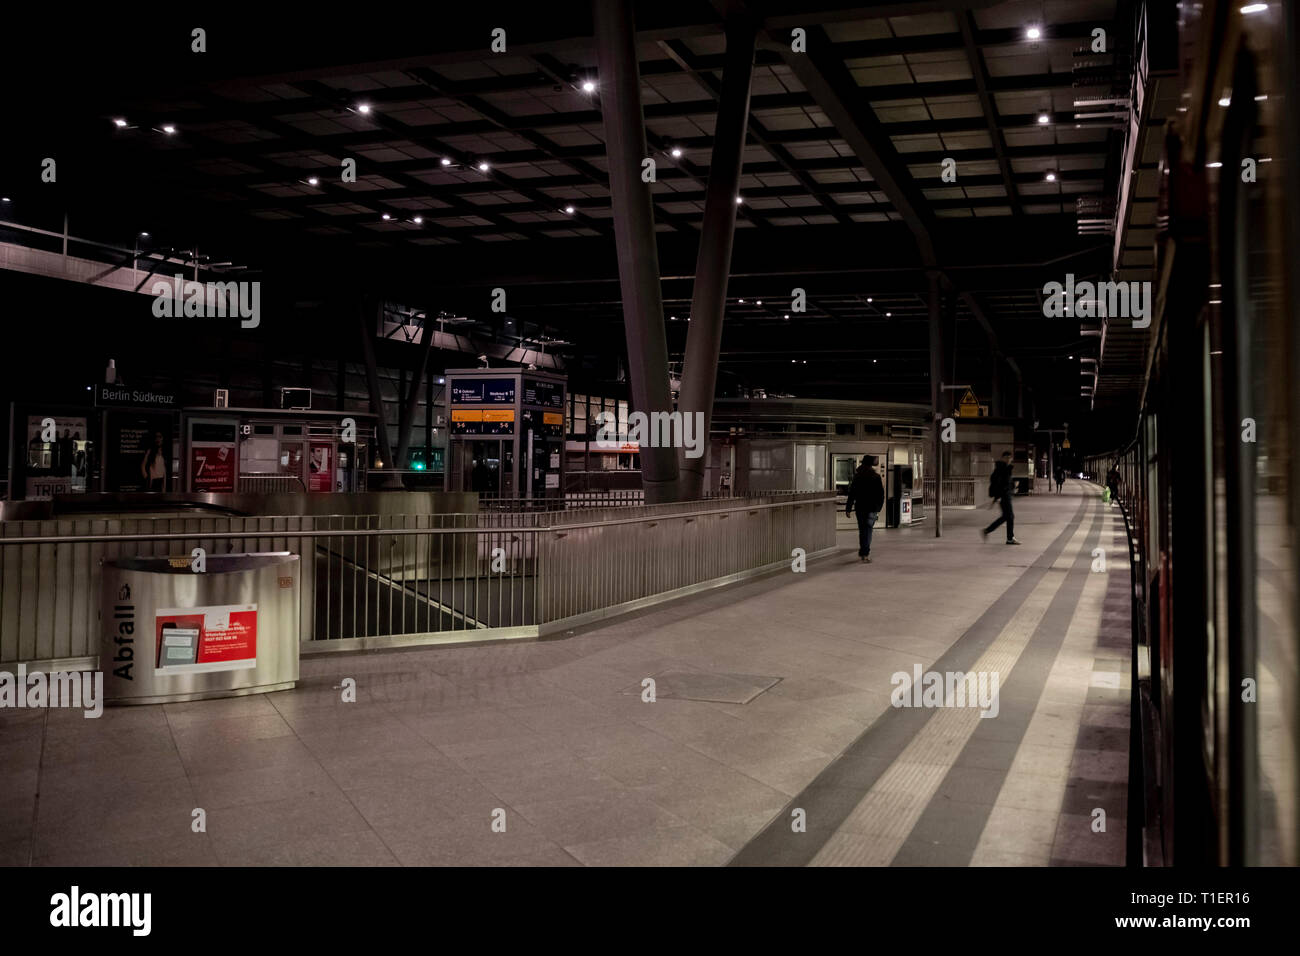 Berlín, Alemania. 26 Mar, 2019. Un S-Bahn se detiene en la estación de Südkreuz, que sólo se enciende con la iluminación de emergencia después de un fallo de alimentación. Crédito: Christoph Soeder/dpa/Alamy Live News Foto de stock